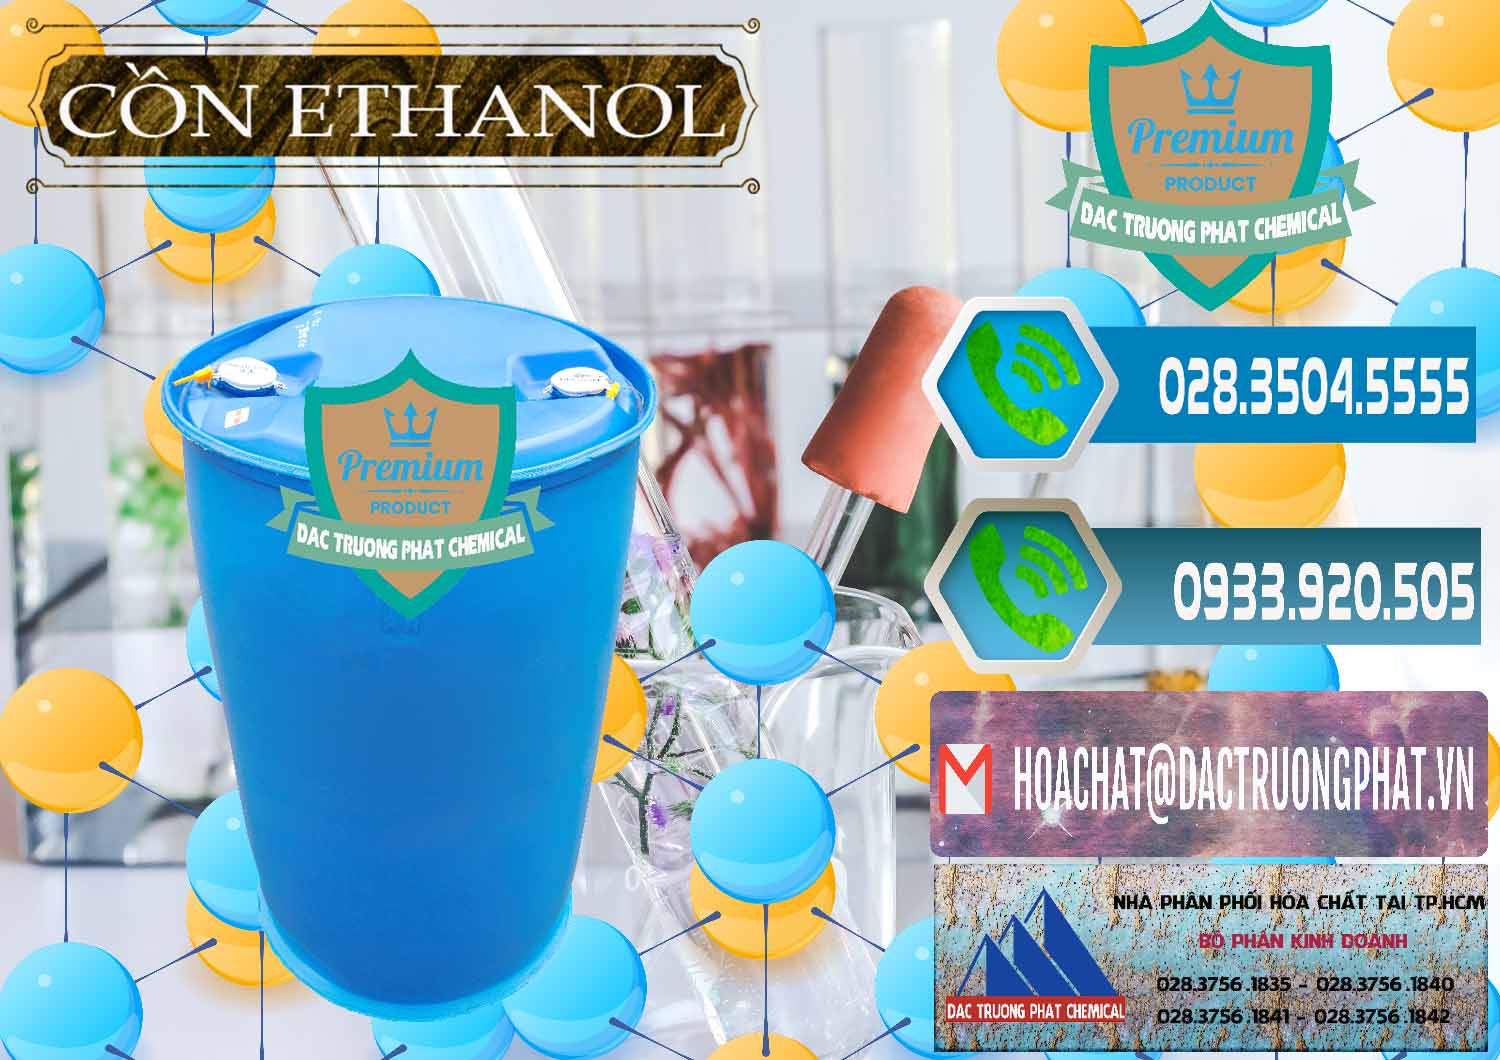 Cty kinh doanh _ bán Cồn Ethanol - C2H5OH Thực Phẩm Food Grade Việt Nam - 0330 - Công ty cung cấp - kinh doanh hóa chất tại TP.HCM - congtyhoachat.net